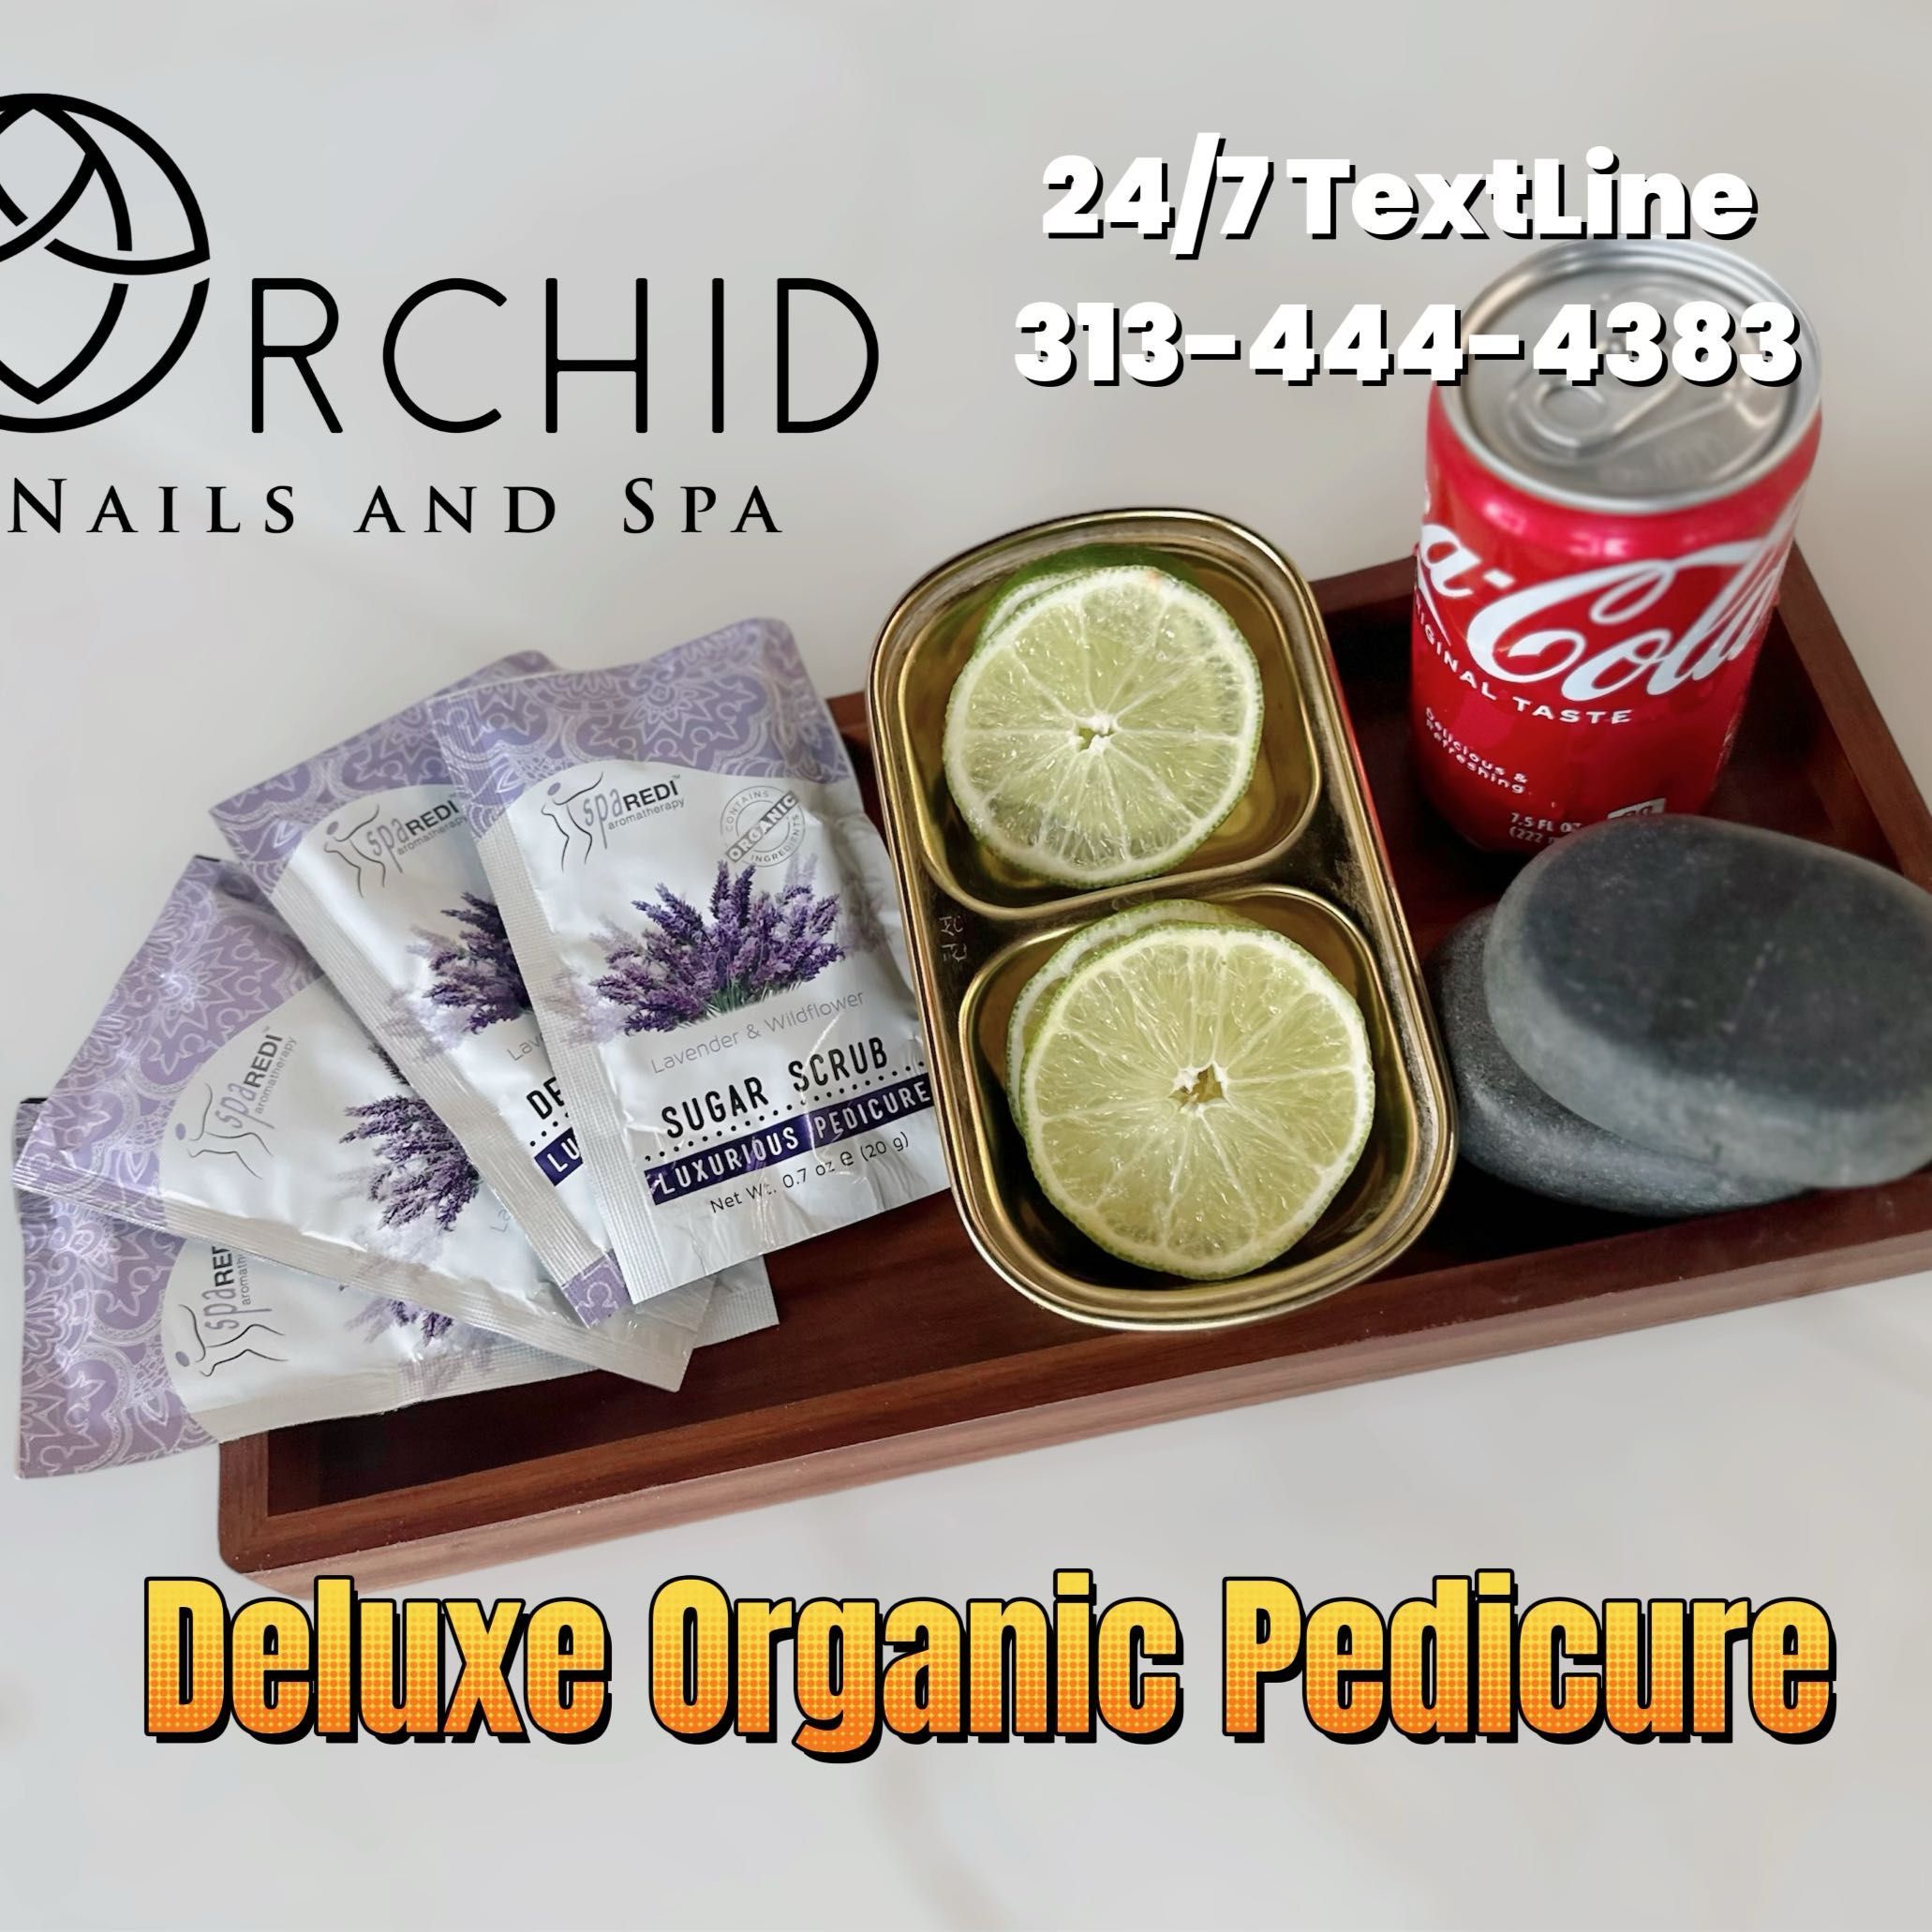 Deluxe Organic Pedicure with Regular Polish Dp P3 portfolio